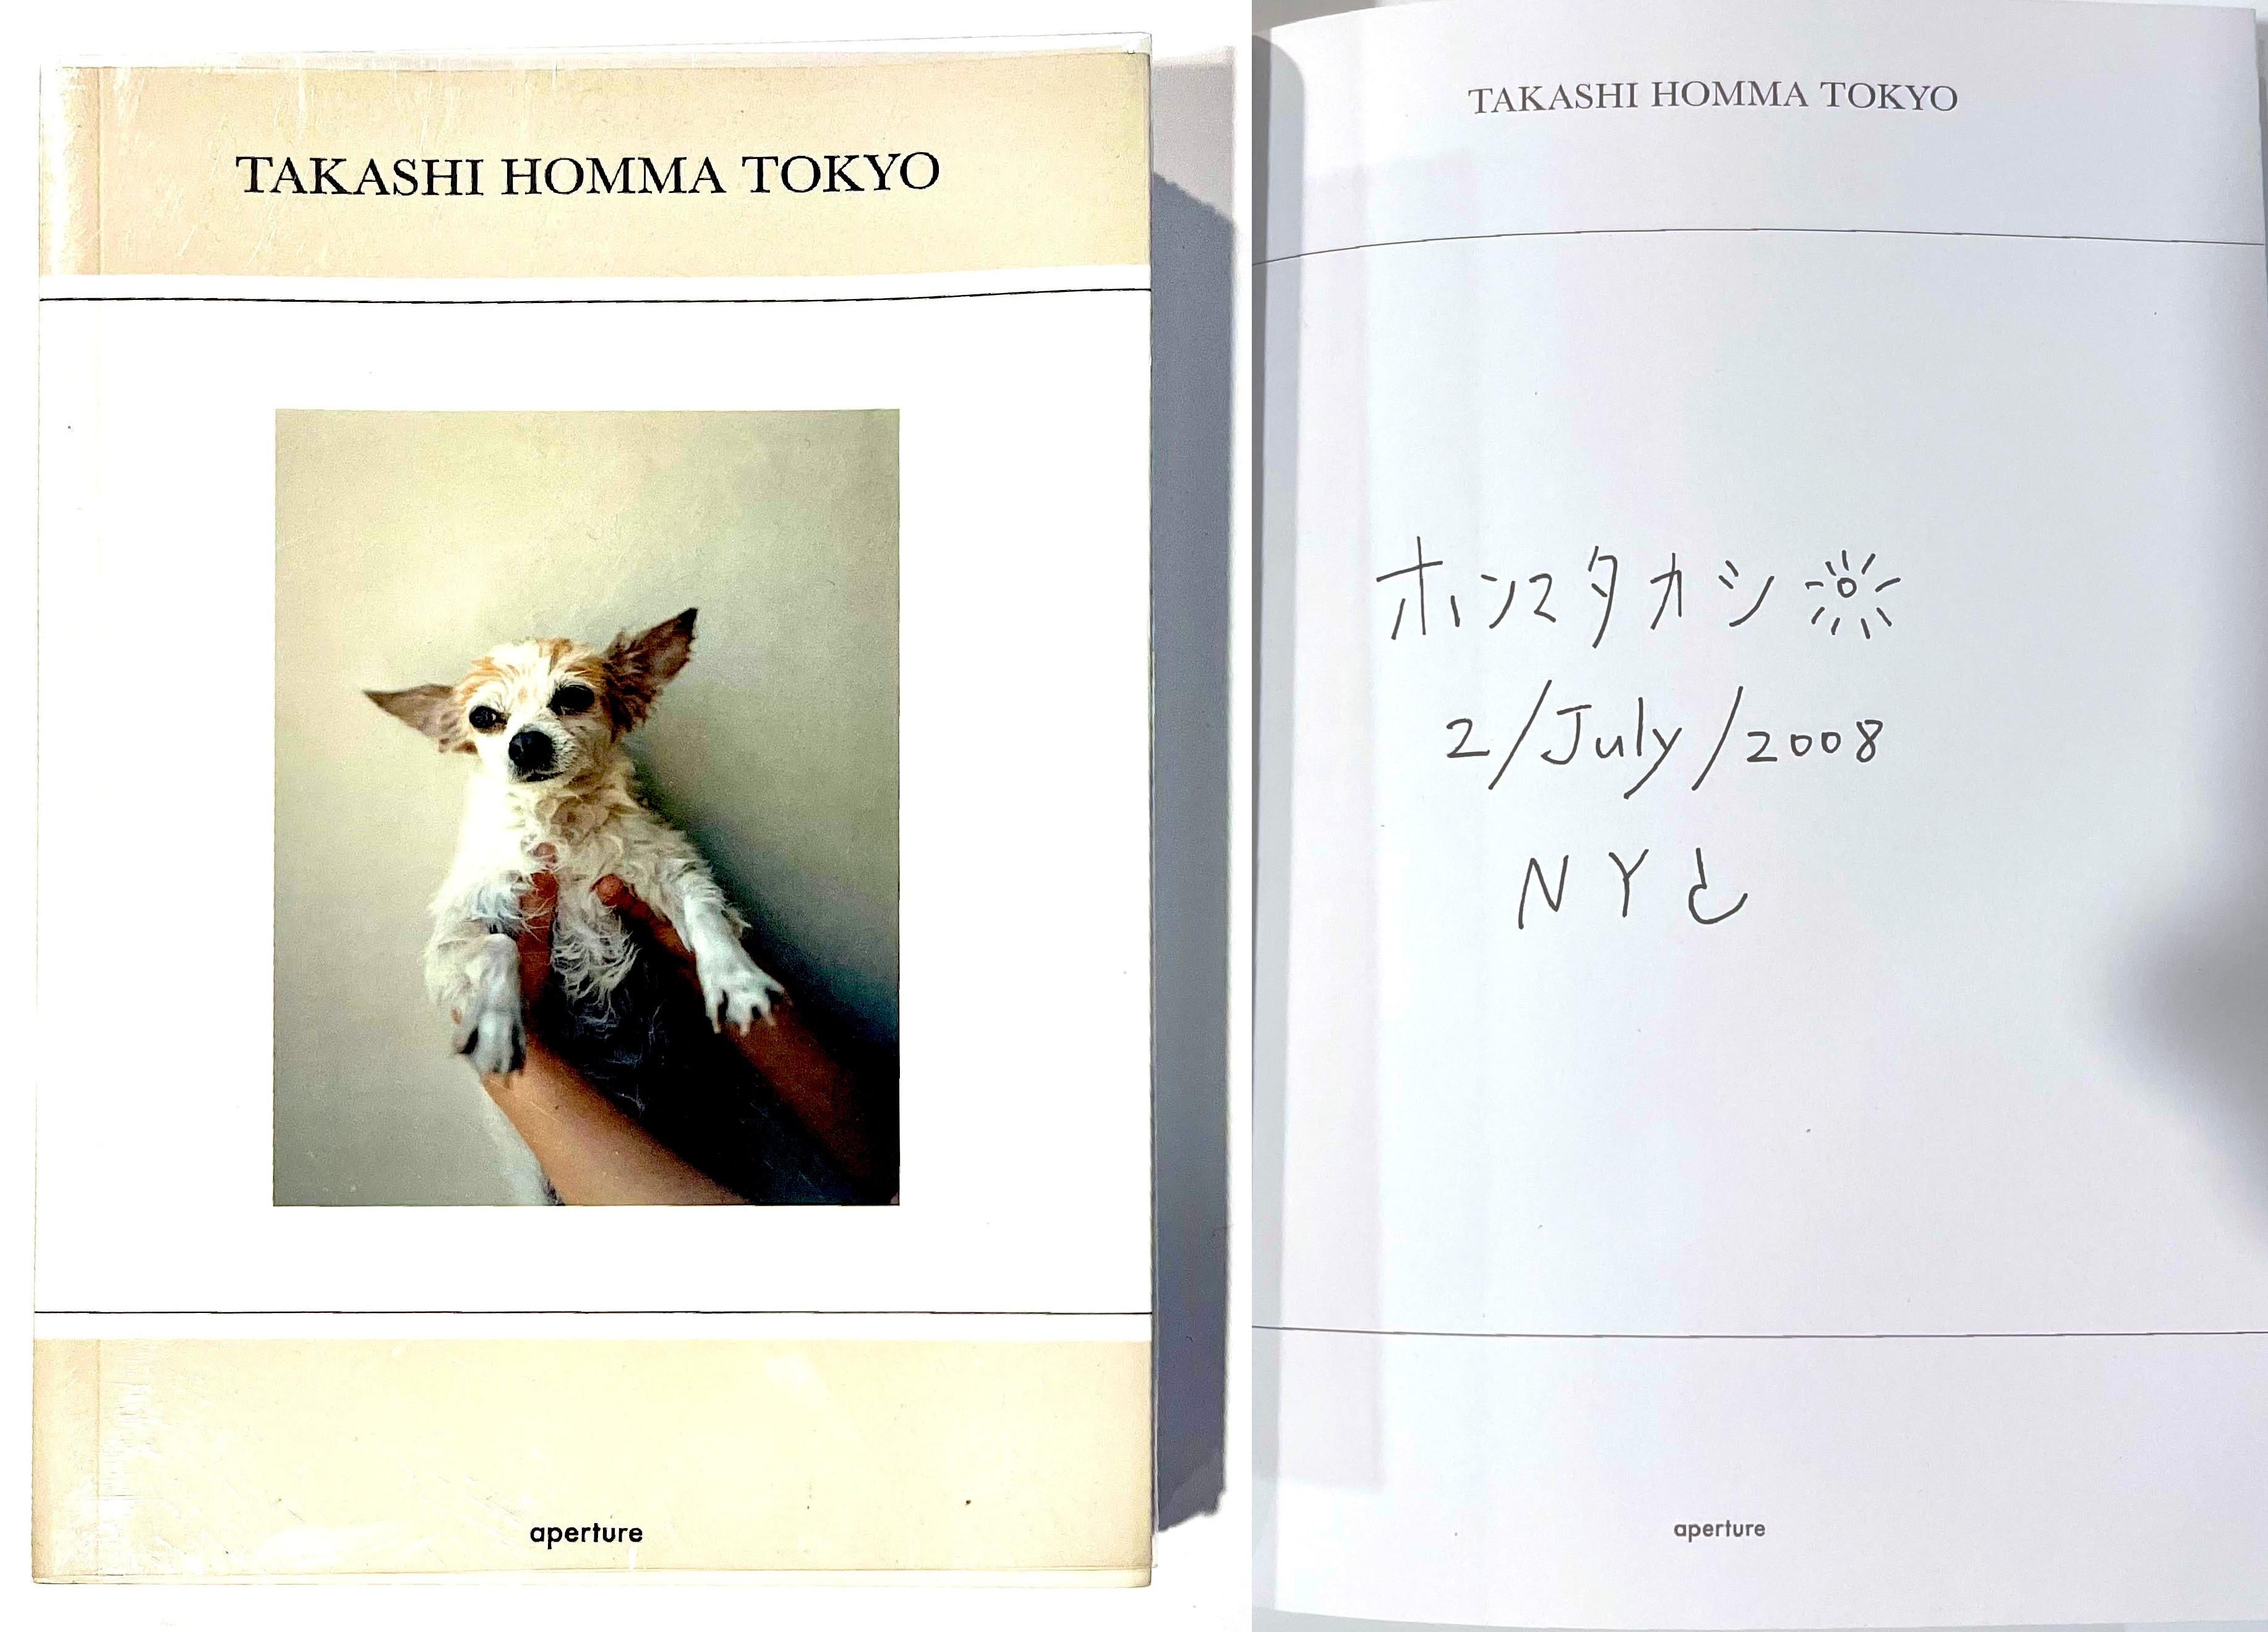 Monographie de Takashi Homma Tokyo, signée à la main, inscrite et datée par Takashi Homma